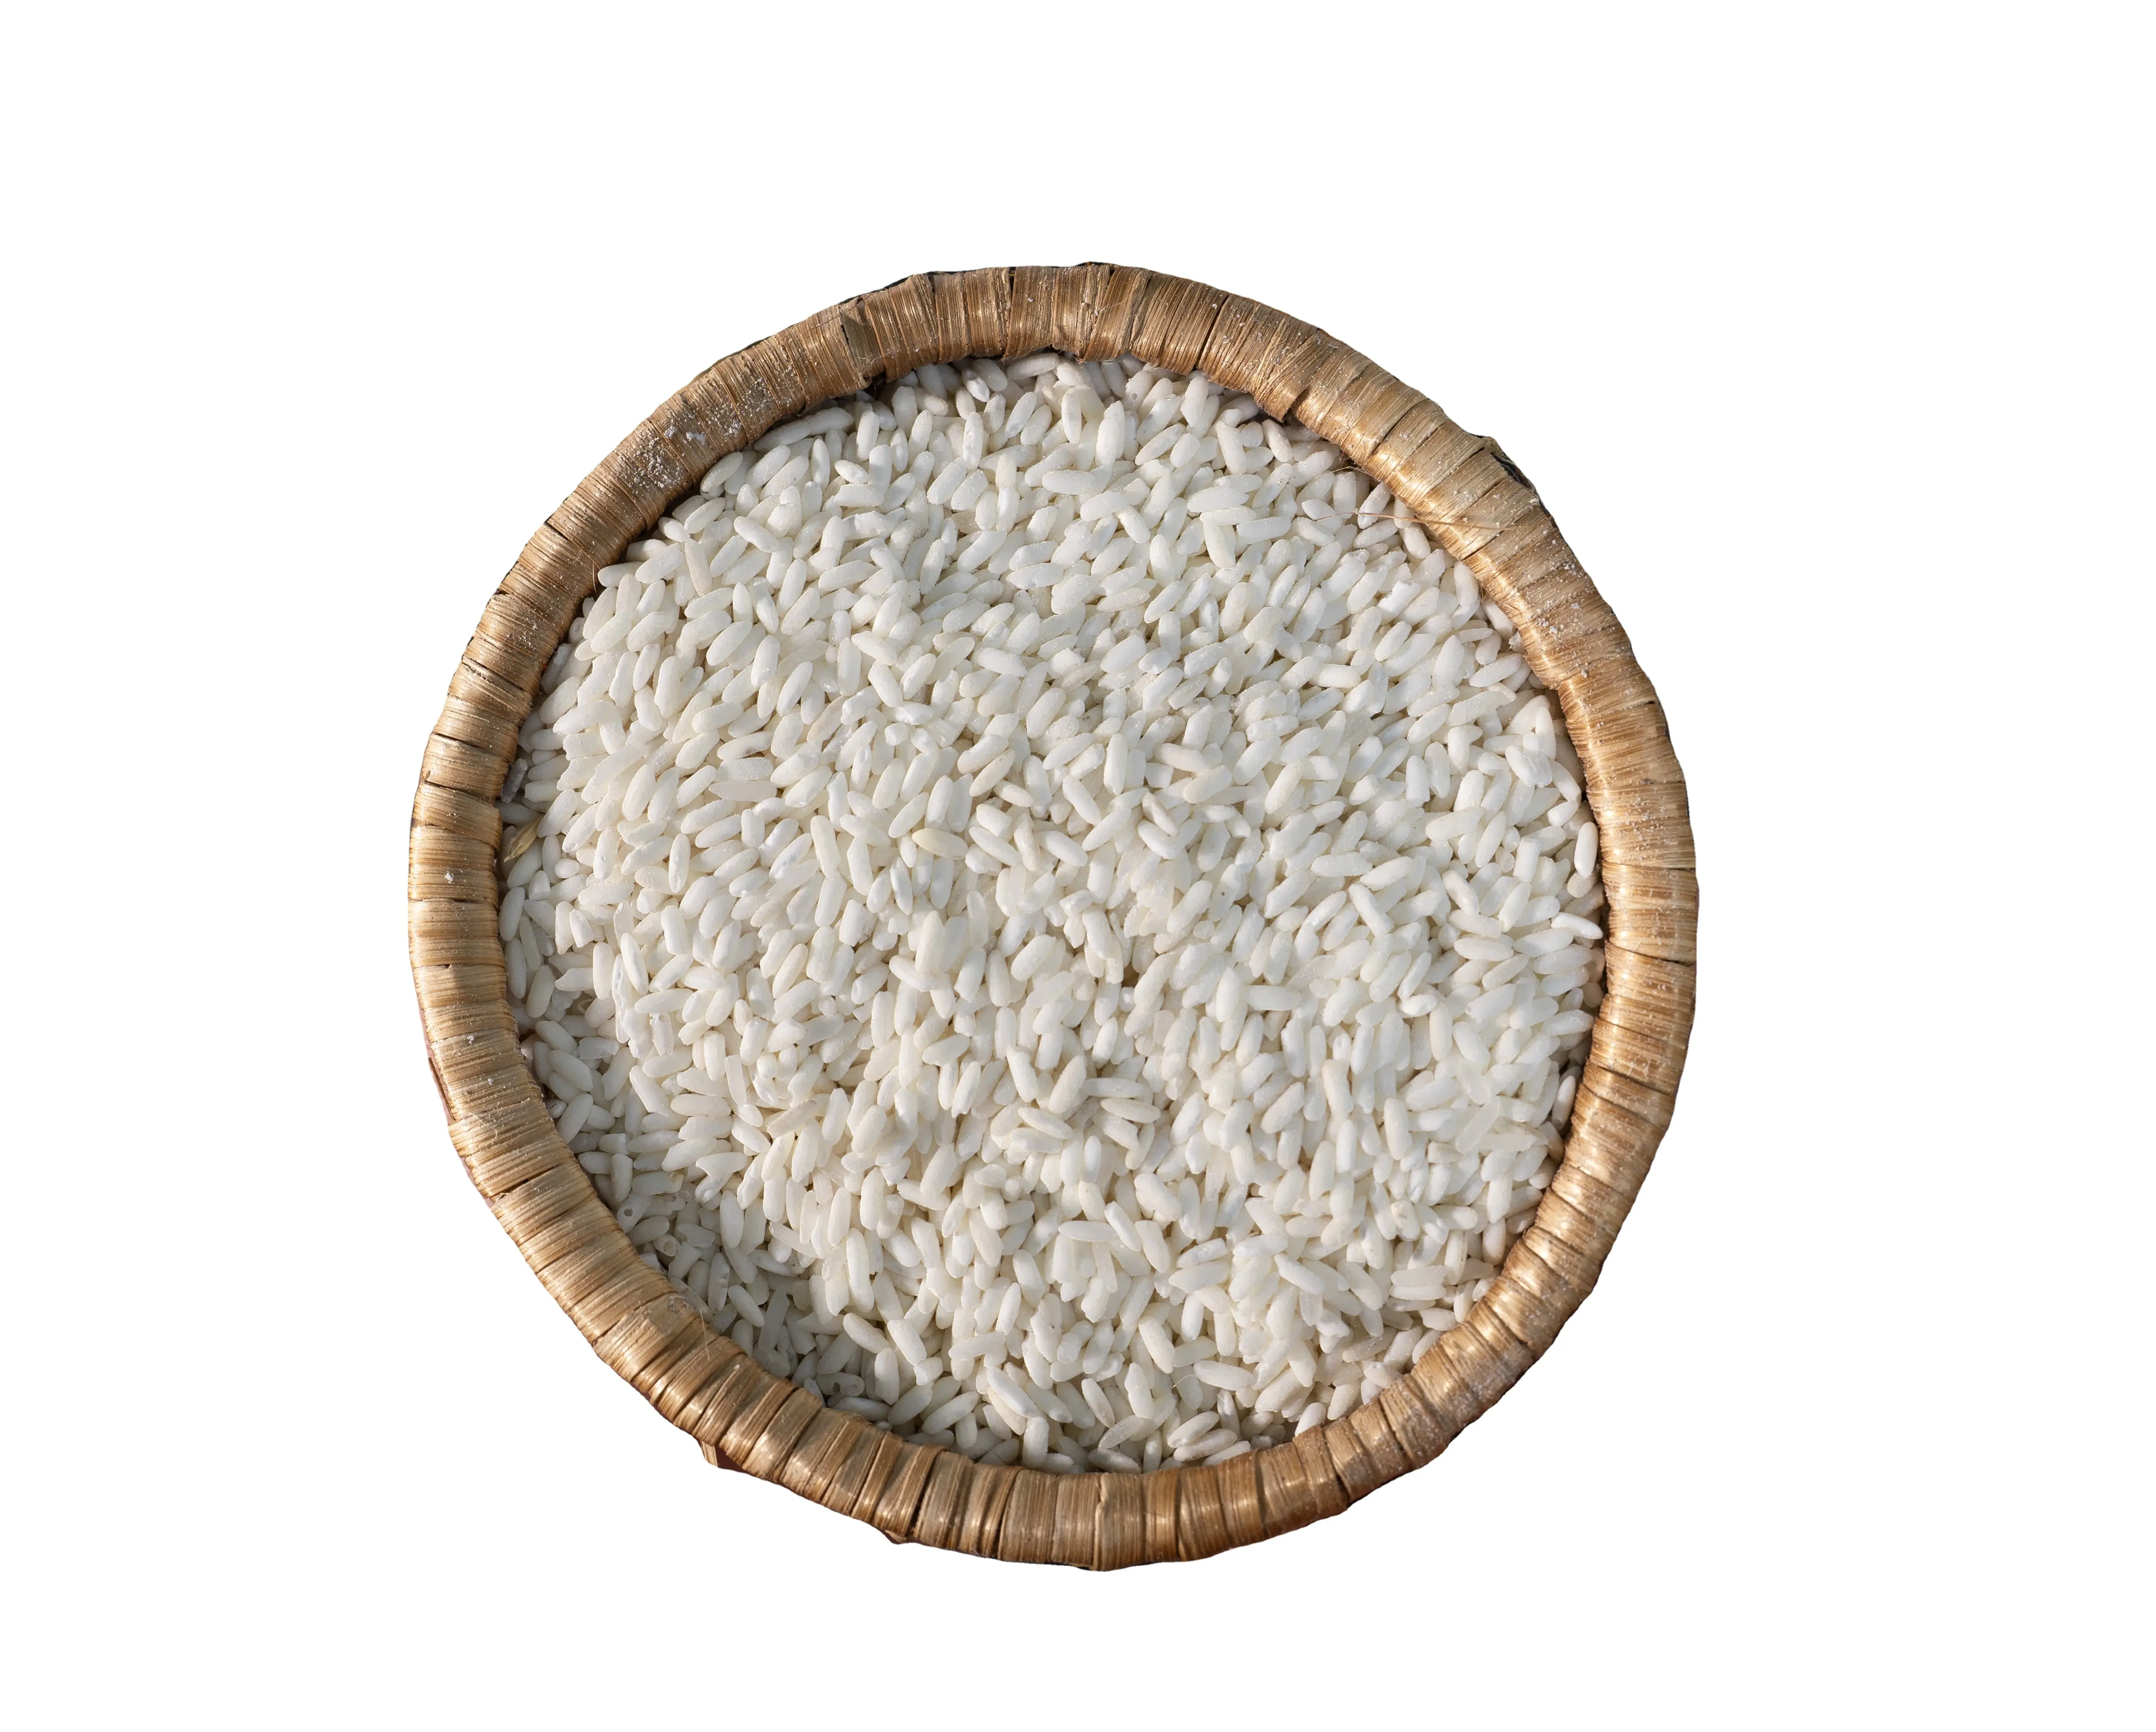 Premium vietnamca yapışkan pirinç: üstün kalite uzun taneli beyaz pirinç 100% kırık, Vietnam vietnamca pirinç kaynaklı